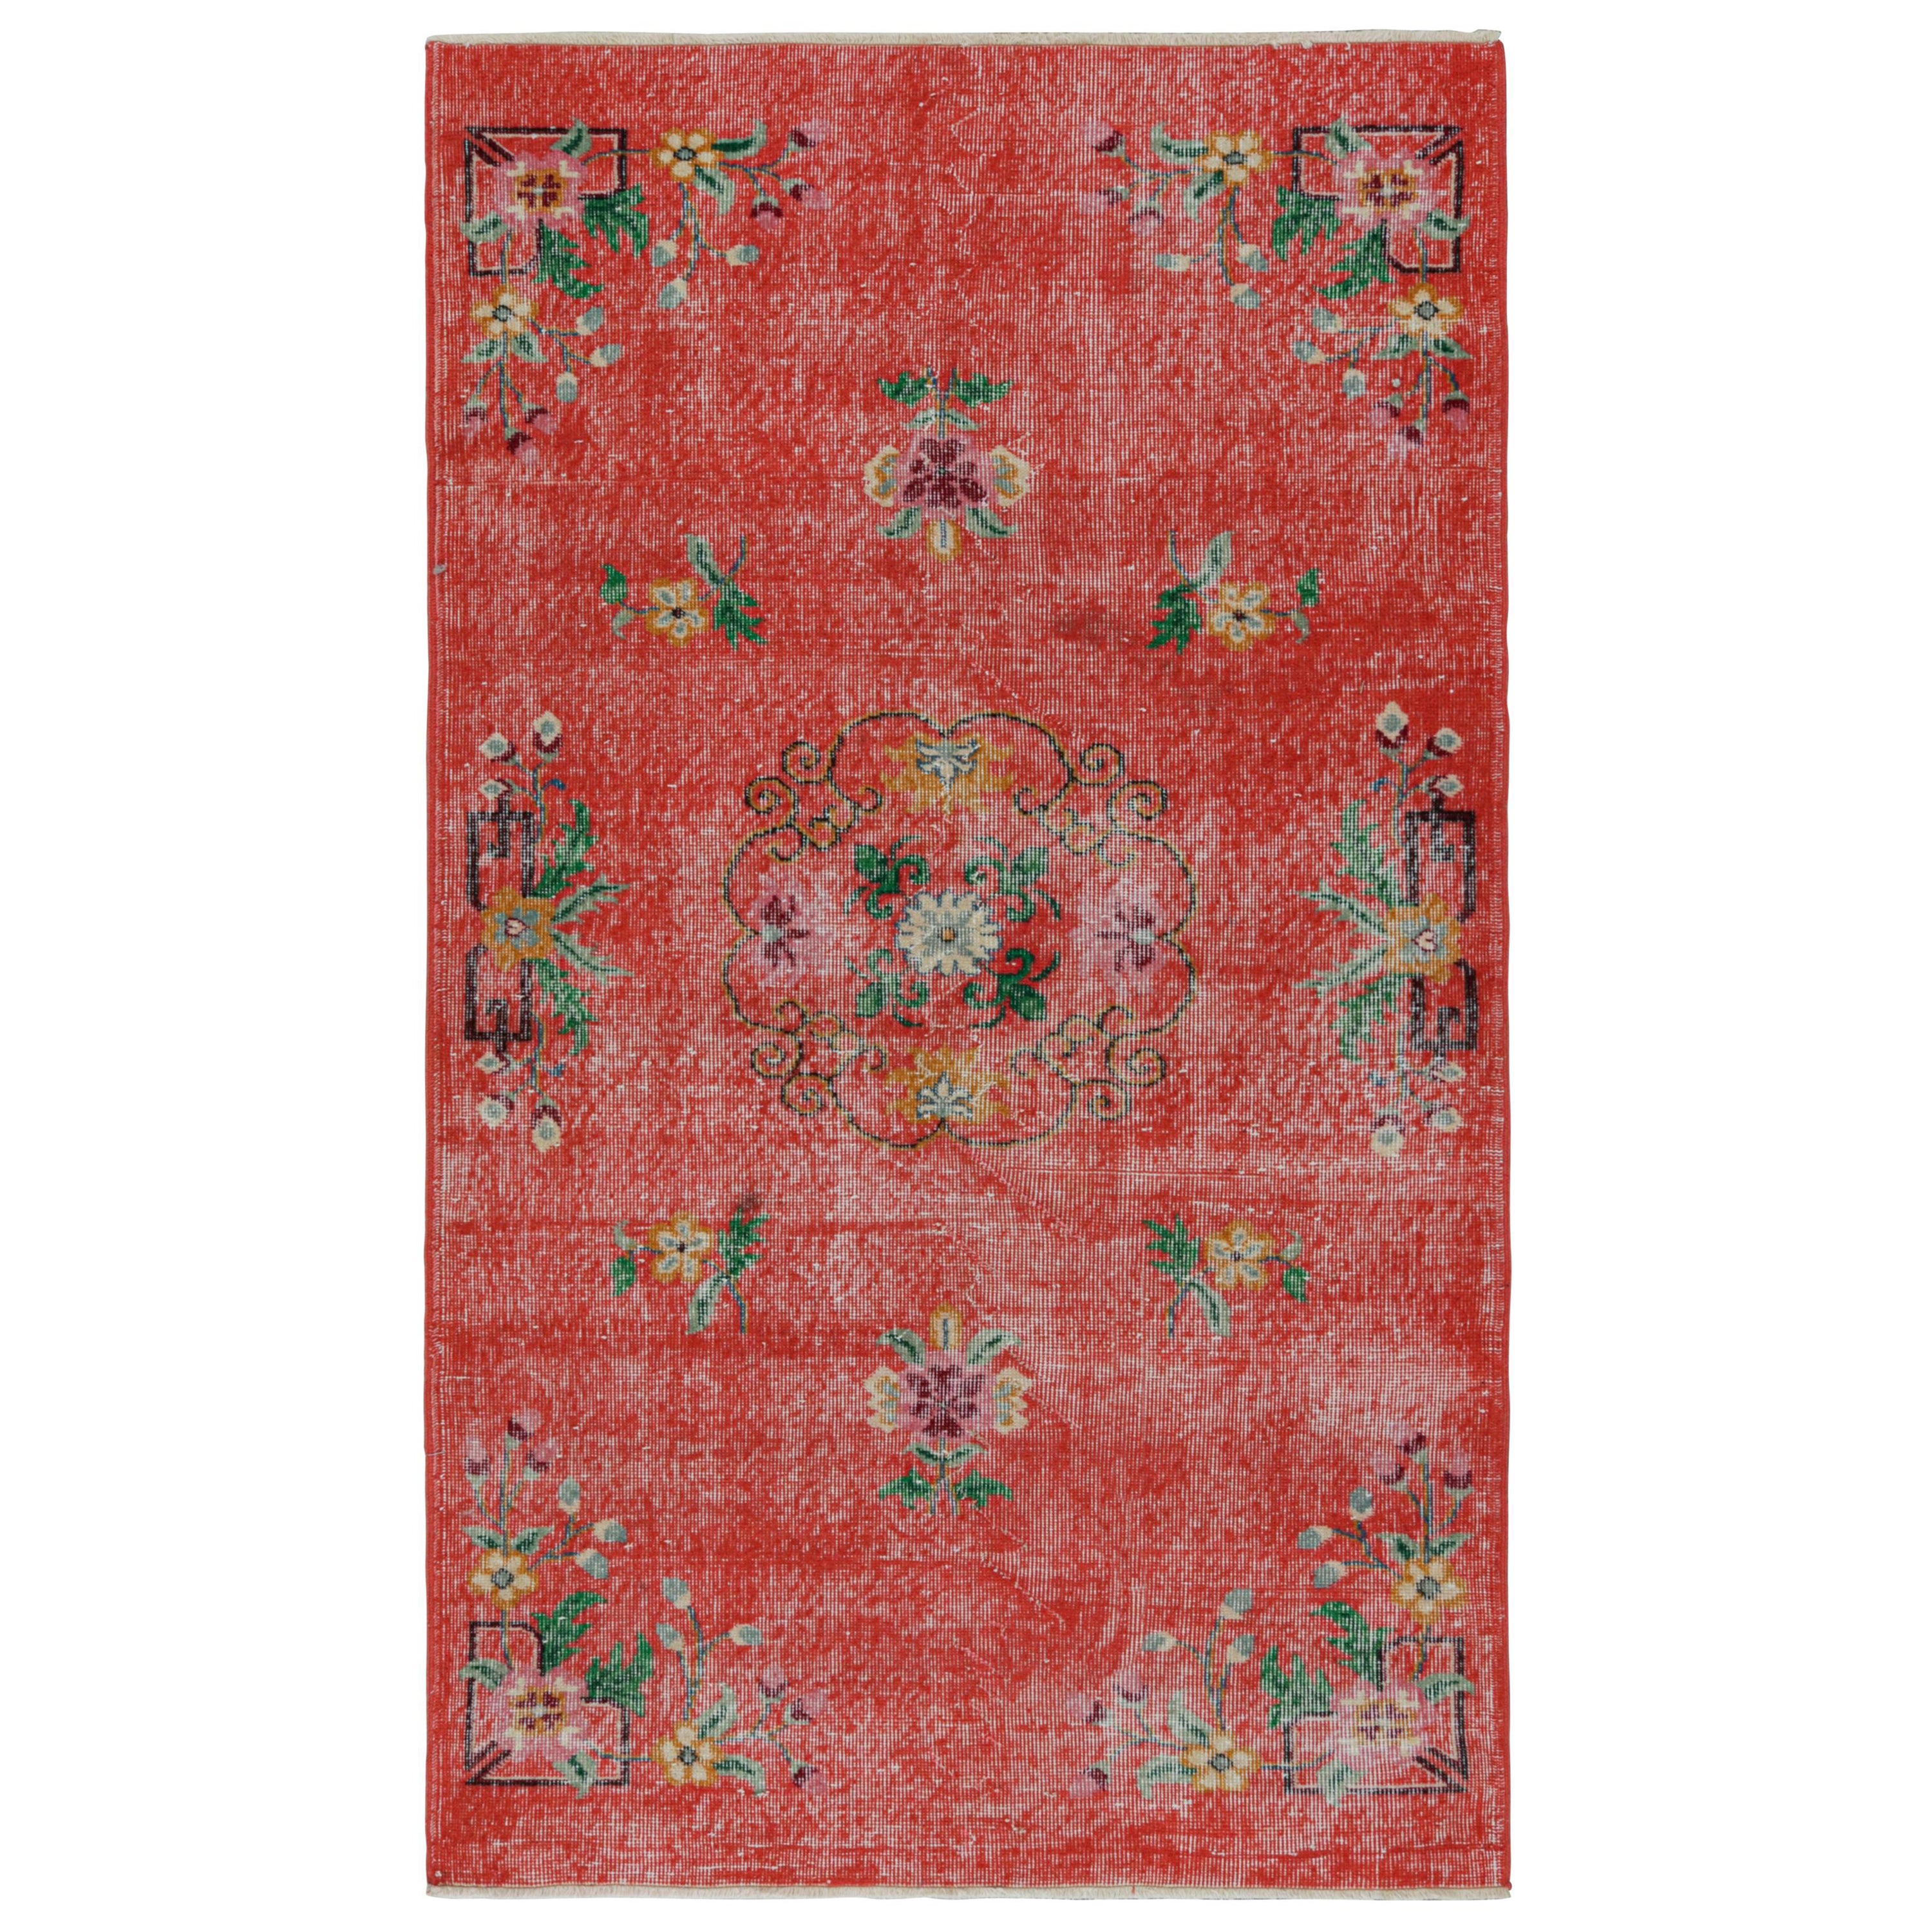 Vintage Zeki Müren Rug in Red with Floral patterns, from Rug & Kilim For Sale